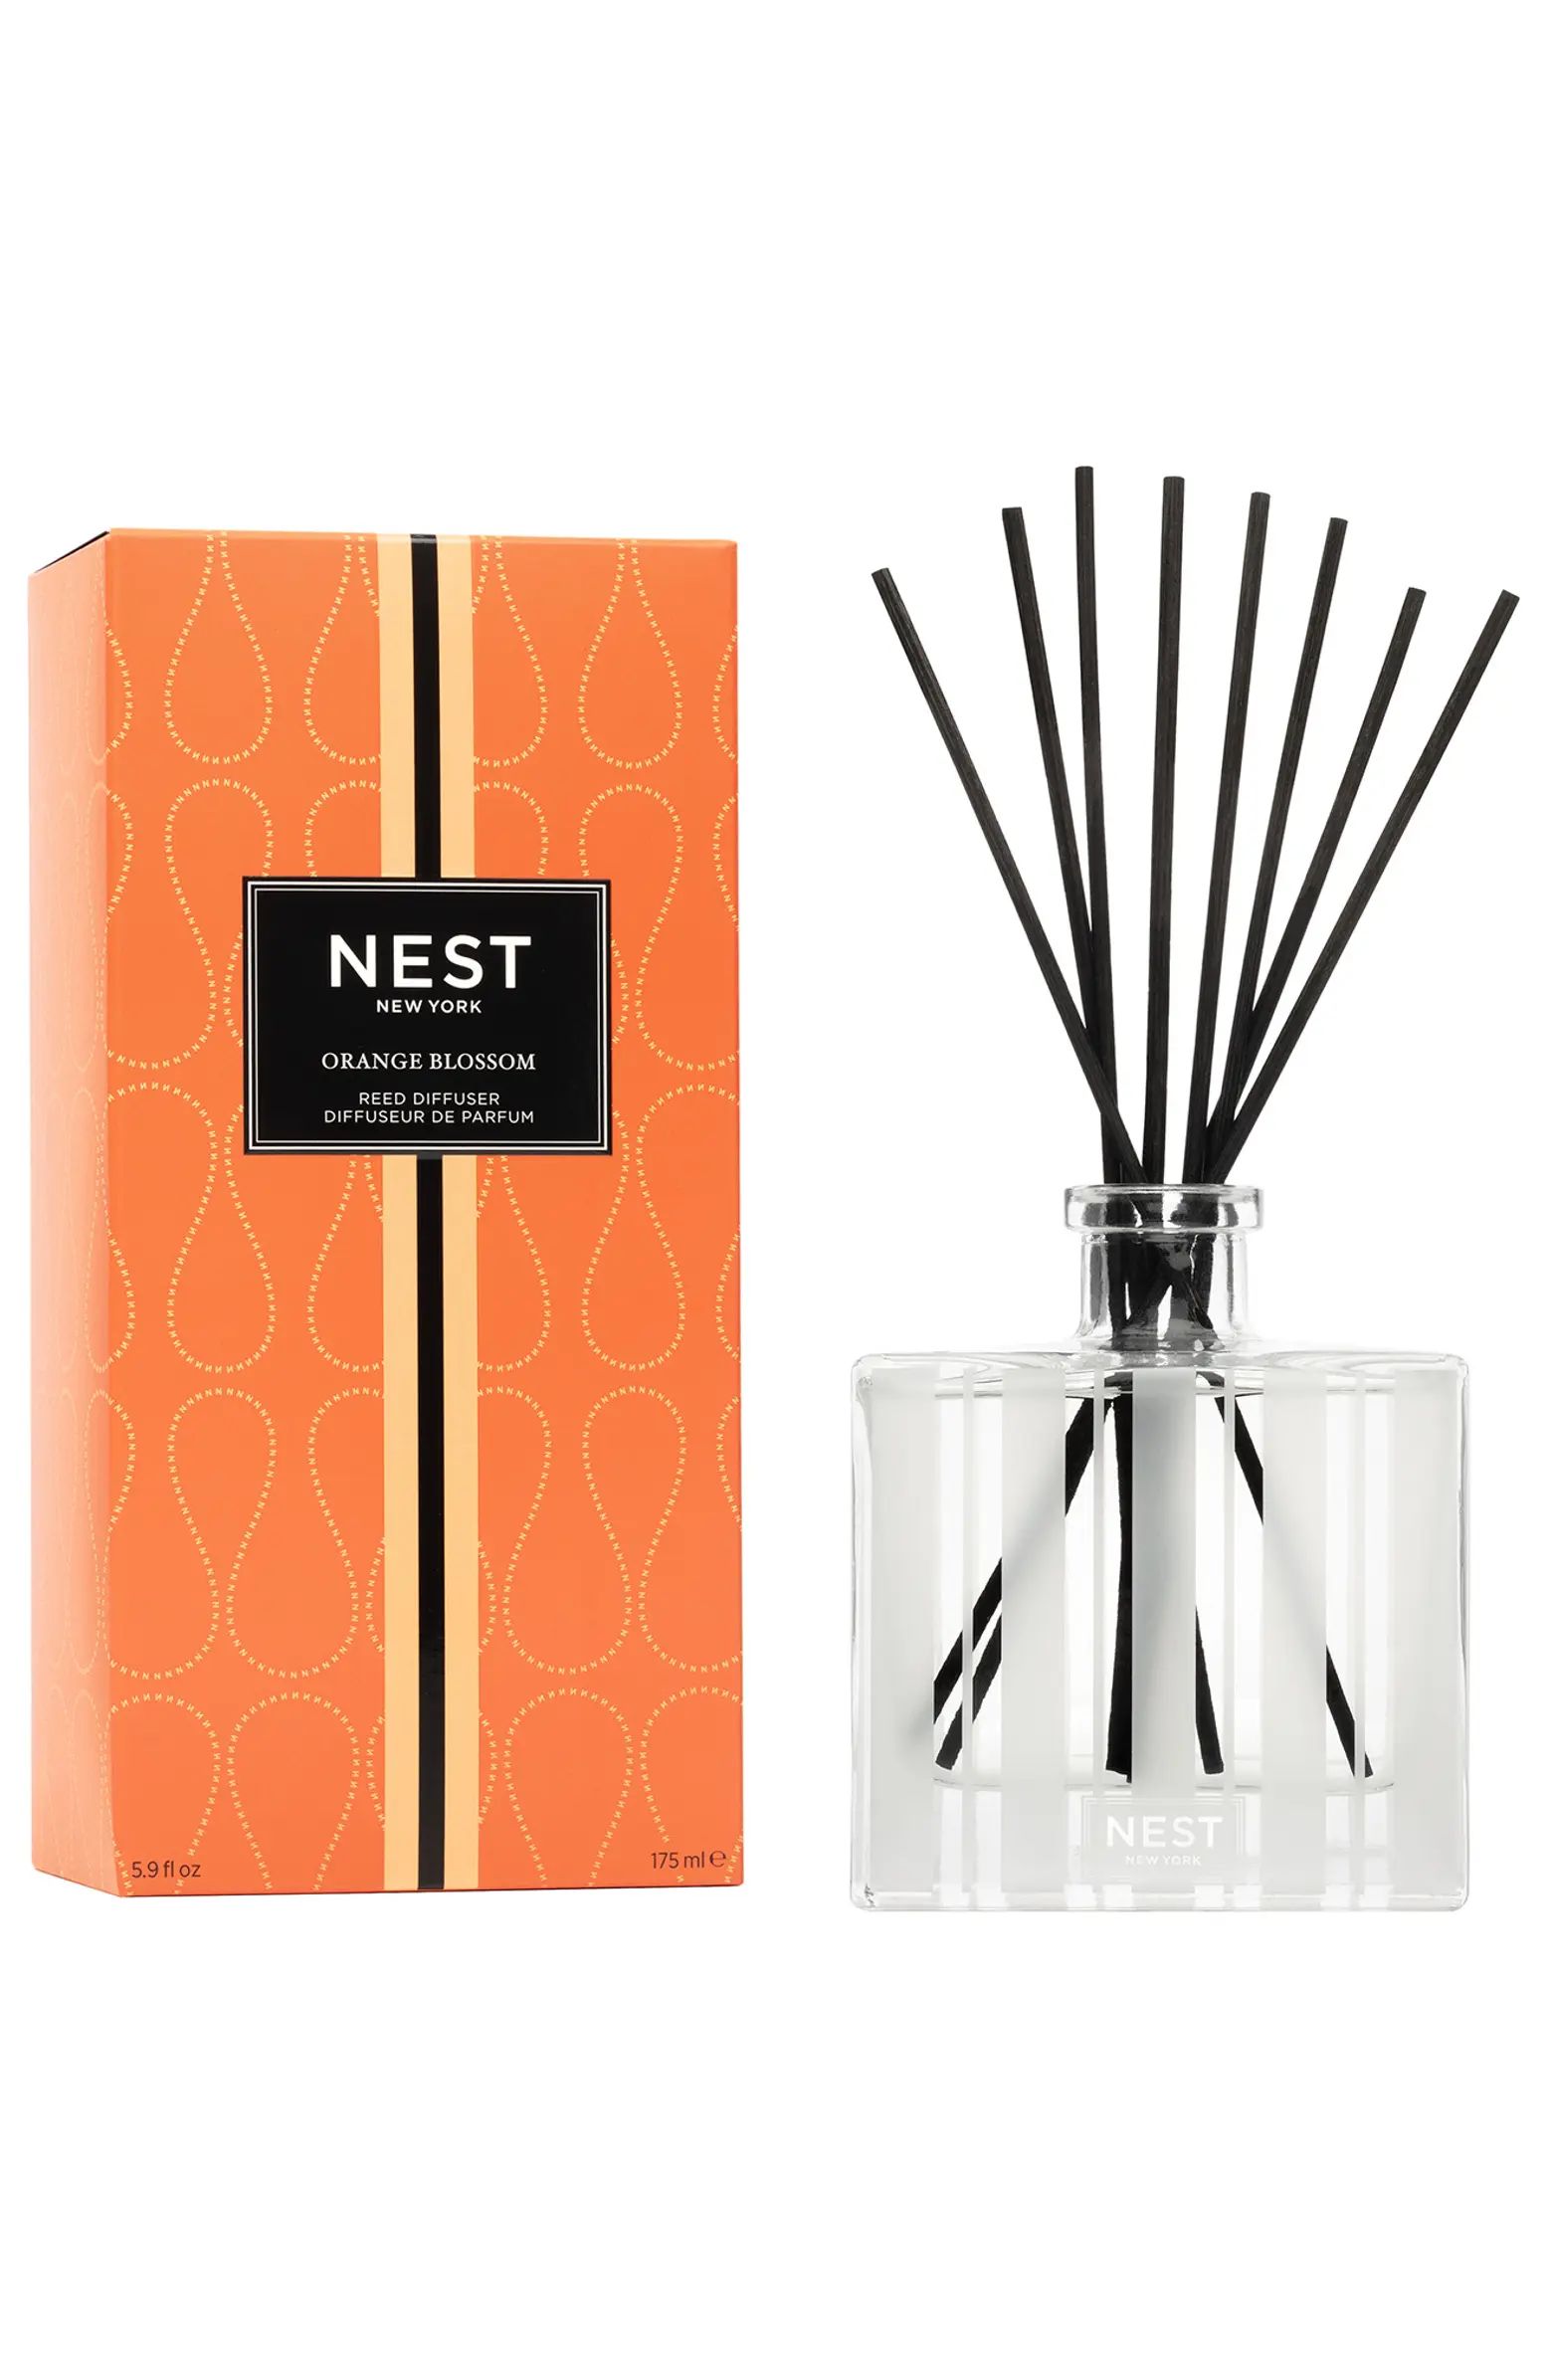 NEST New York NEST Orange Blossom Reed Diffuser | Nordstromrack | Nordstrom Rack